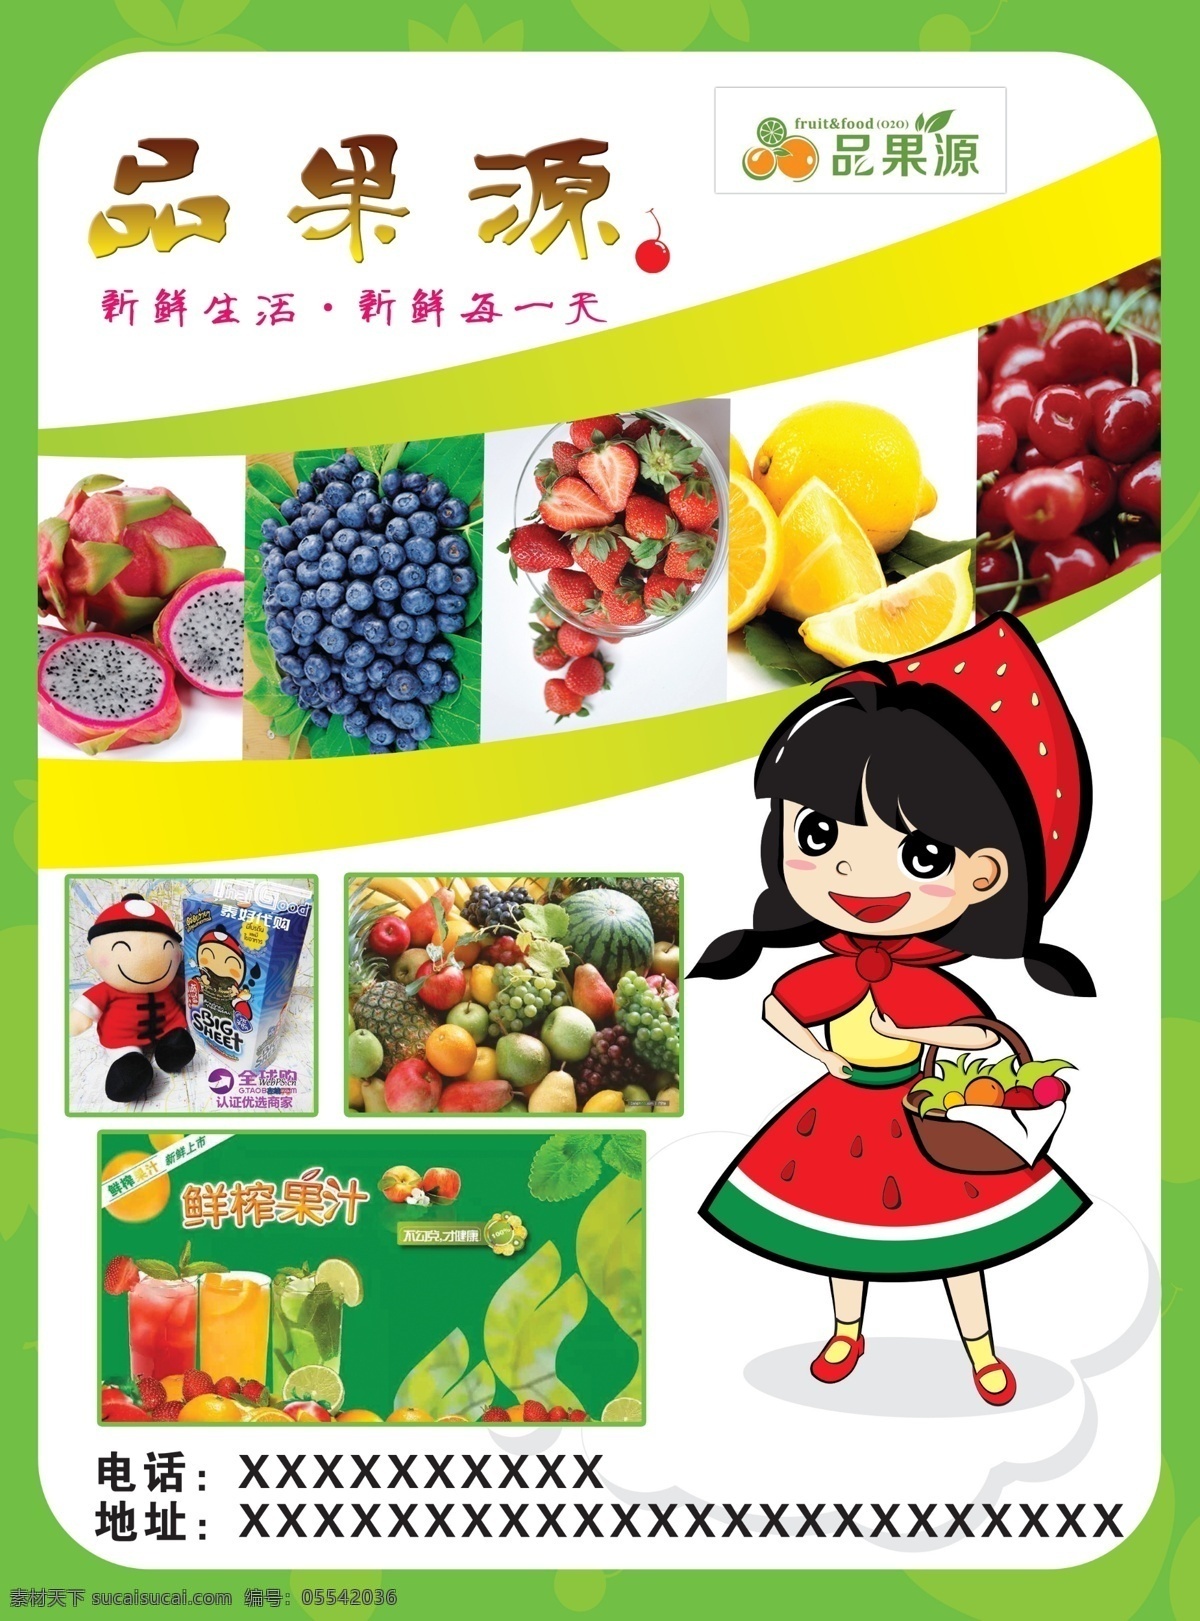 水果 宣传单 水果宣传单 水果店dm 水果店宣传单 水果海报 各色水果 绿色底 水果店开业 dm宣传单 白色